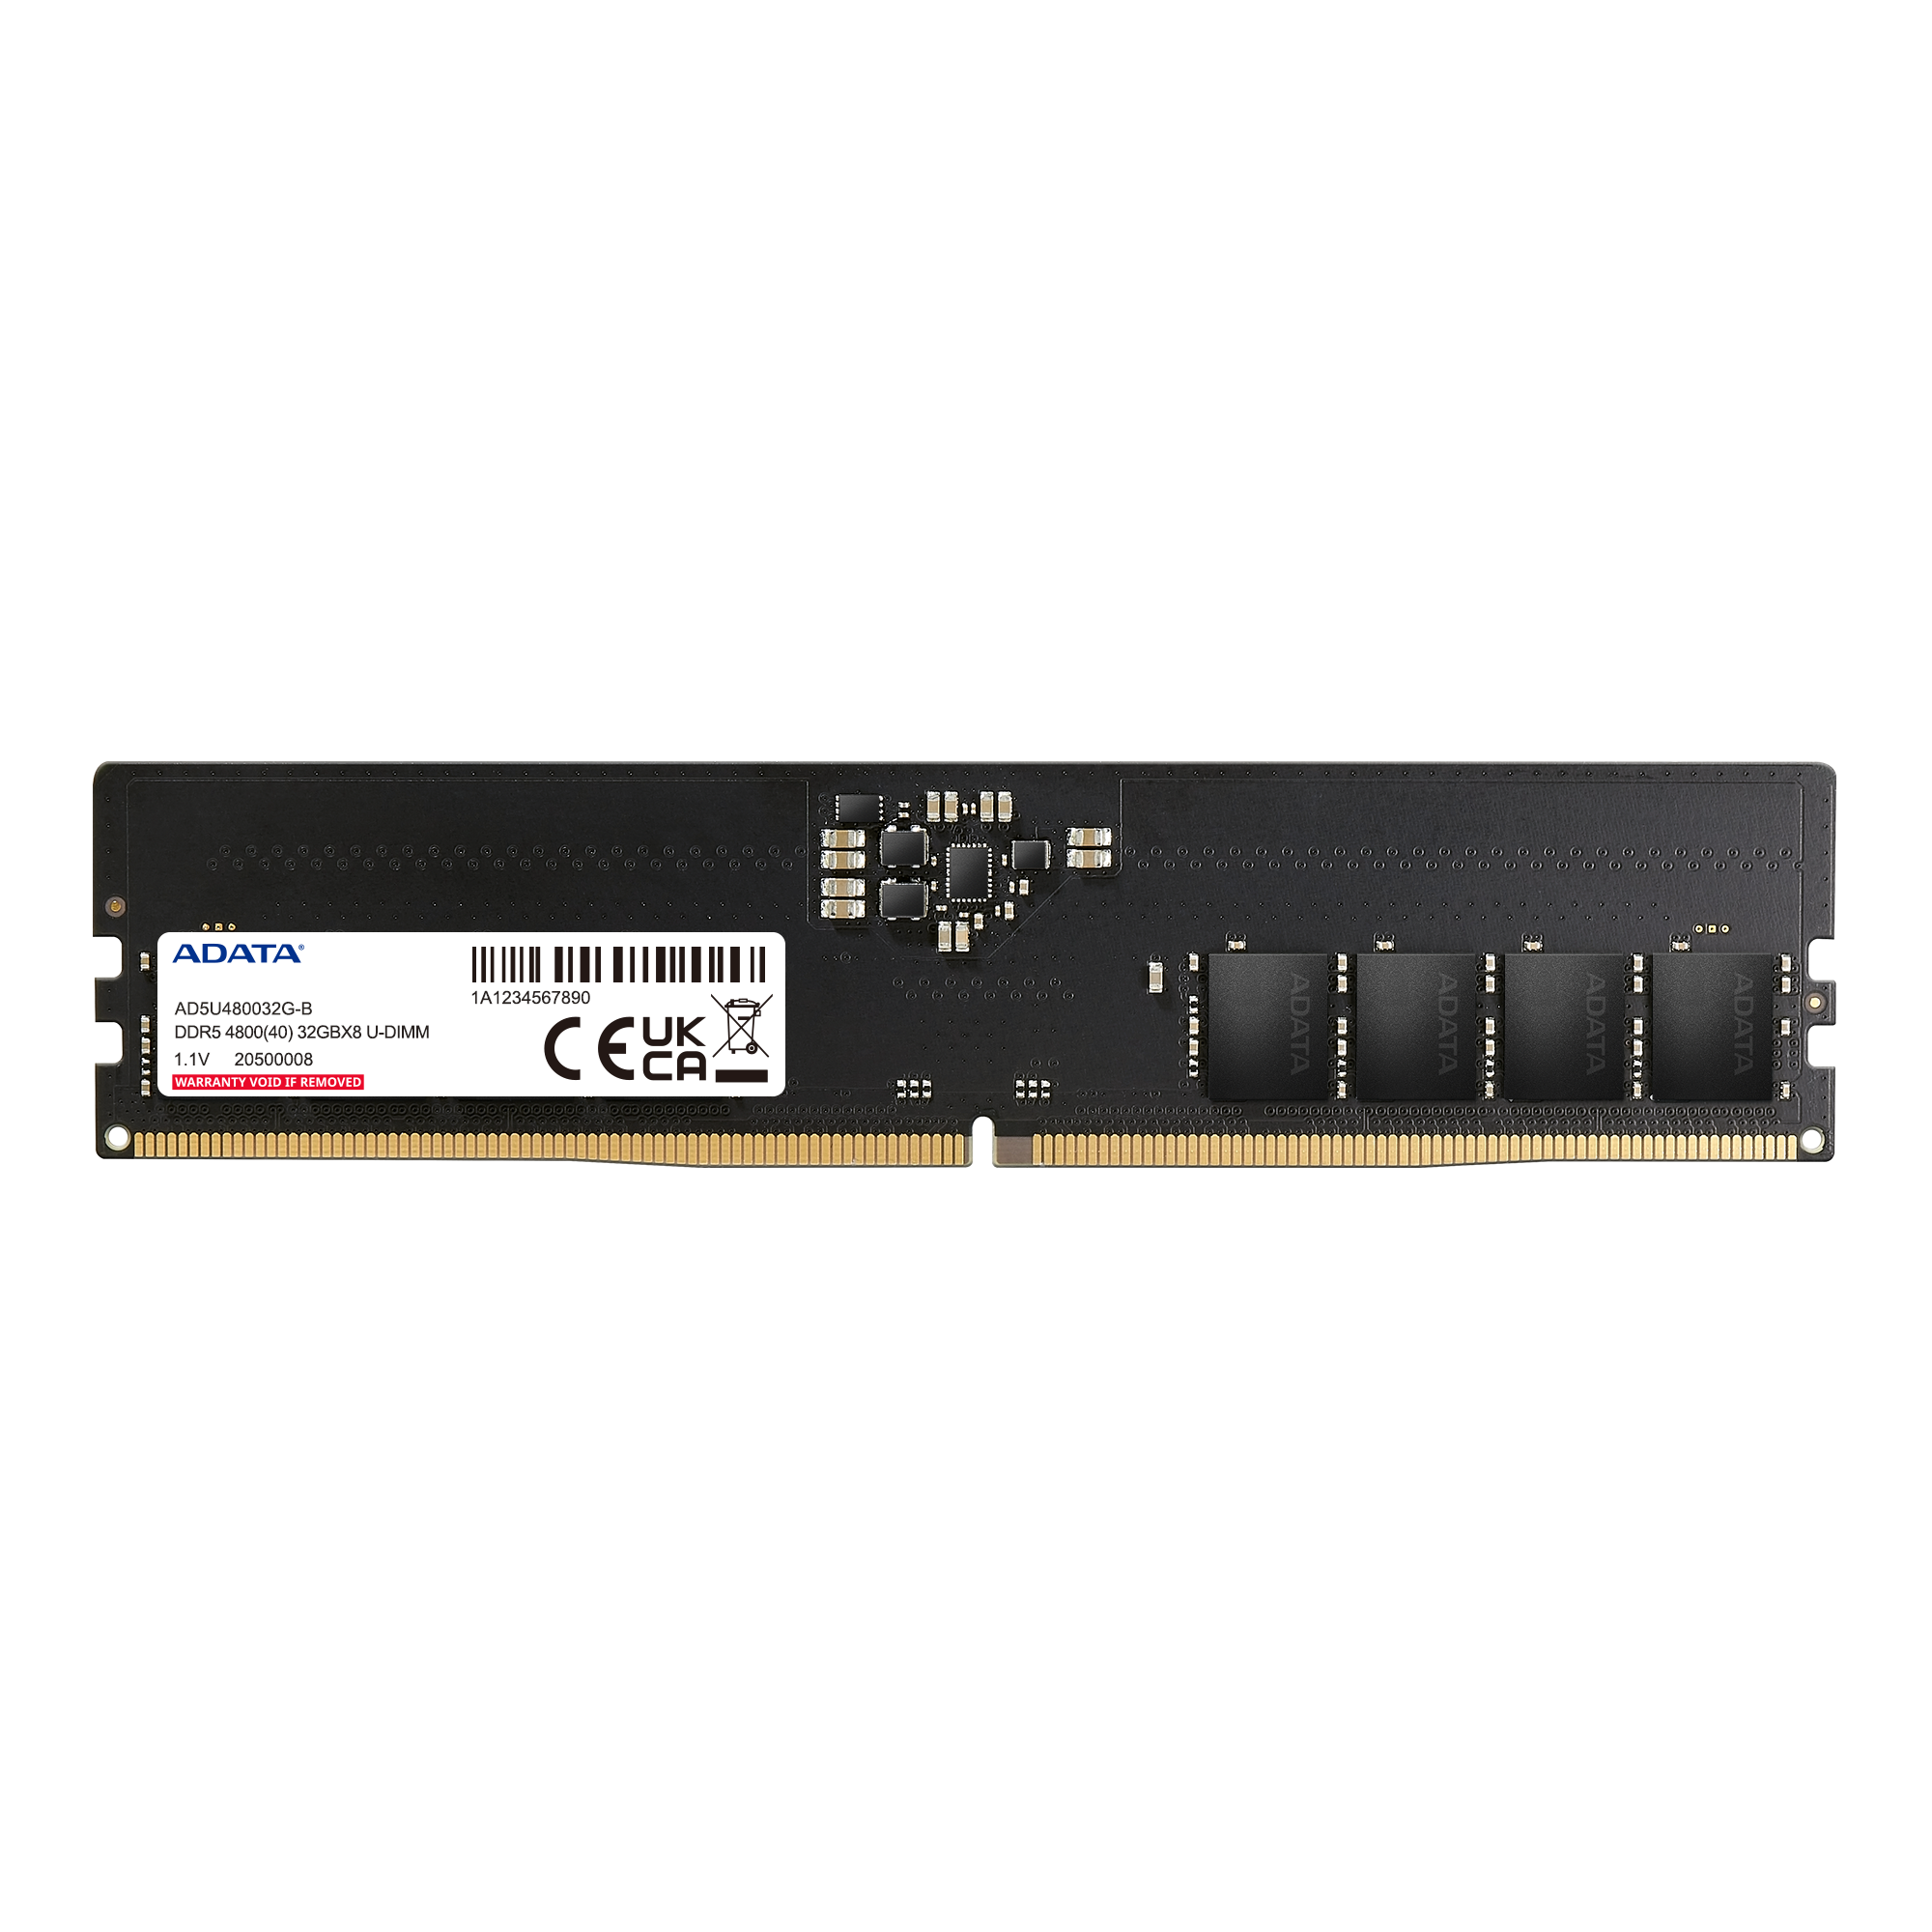 SK hynix Intros World's First 32 GB DDR5-6400 SODIMM & UDIMM